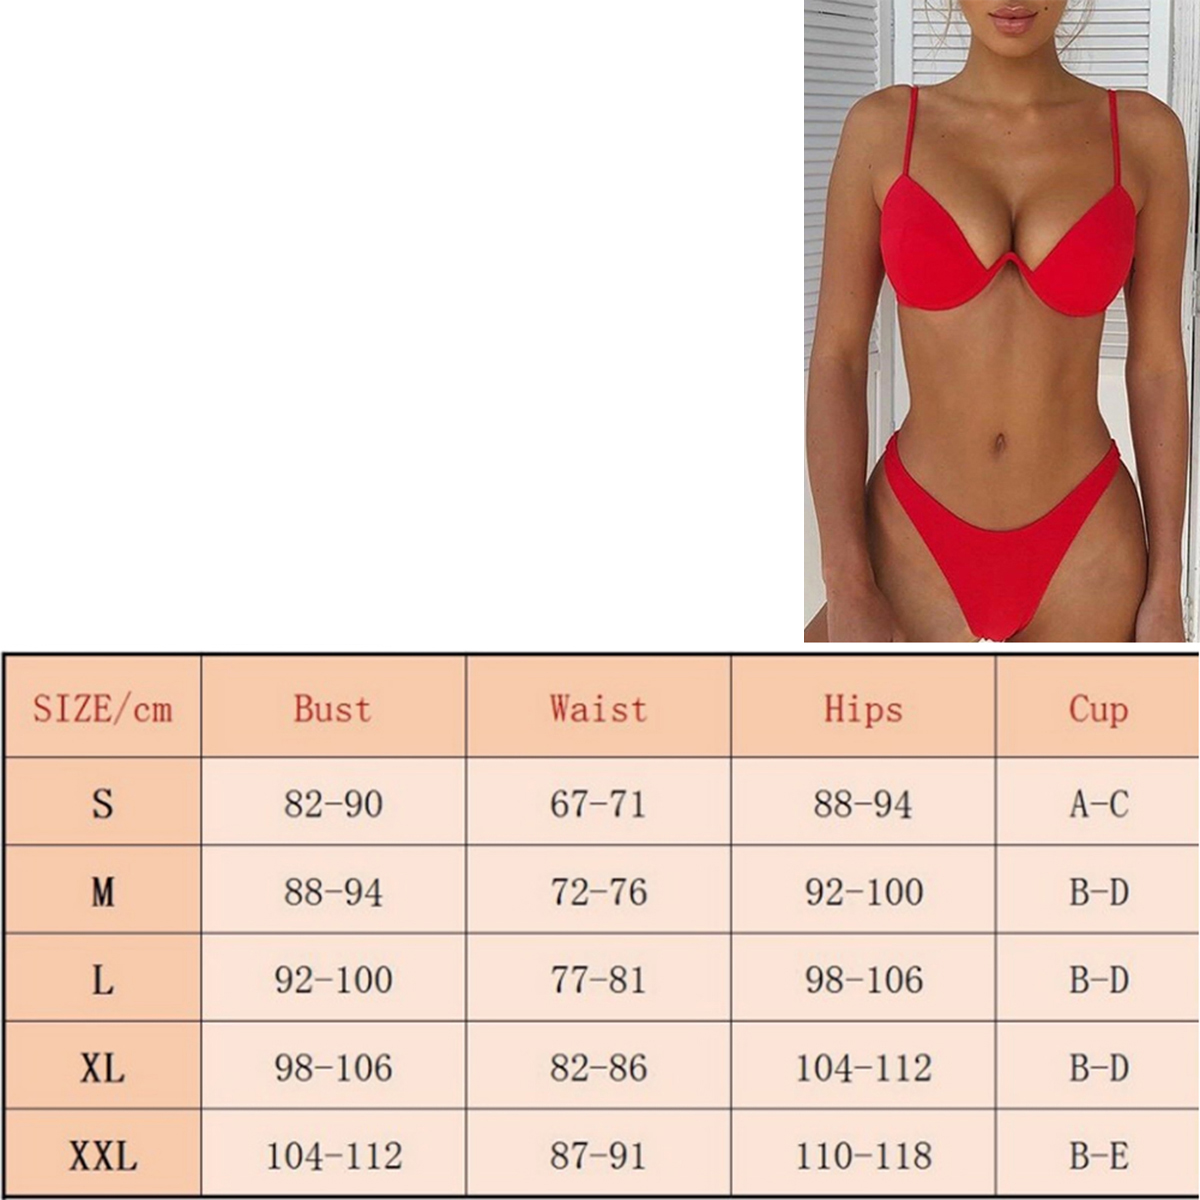 Hopiumy Womens Bandage Push-up Padded Bikini Set Swimwear Swimsuit Bathing Suit Lot - image 2 of 5